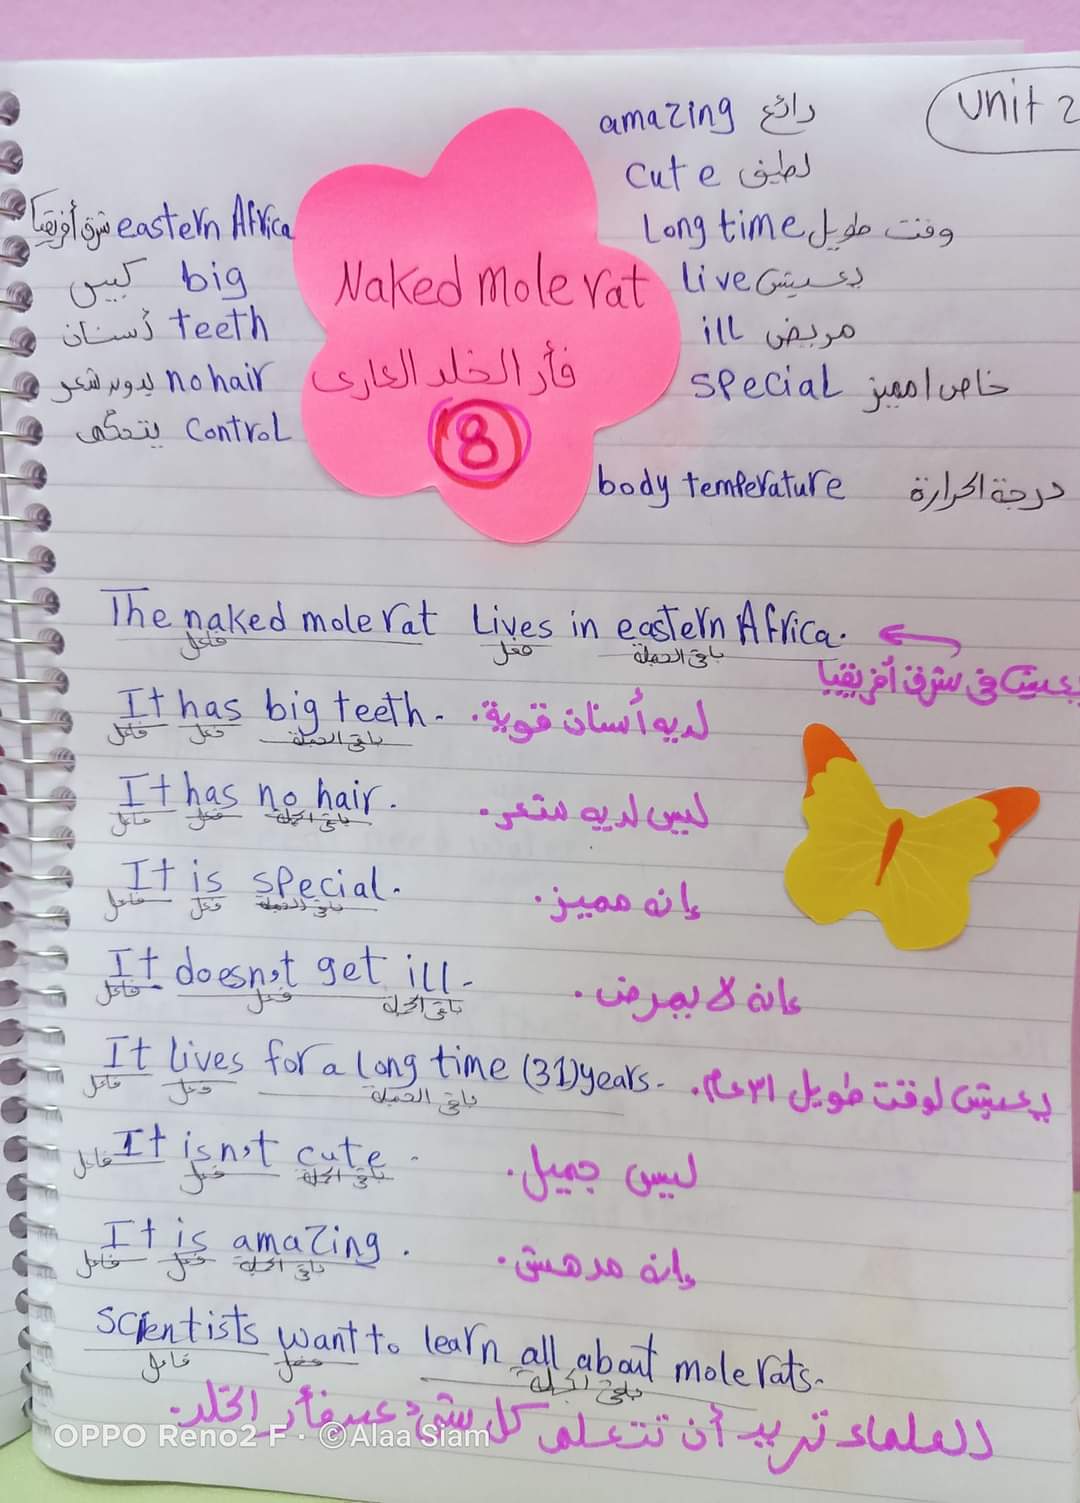 مراجعة انجليزي الصف الرابع مس آلاء صيام - Alaa siam